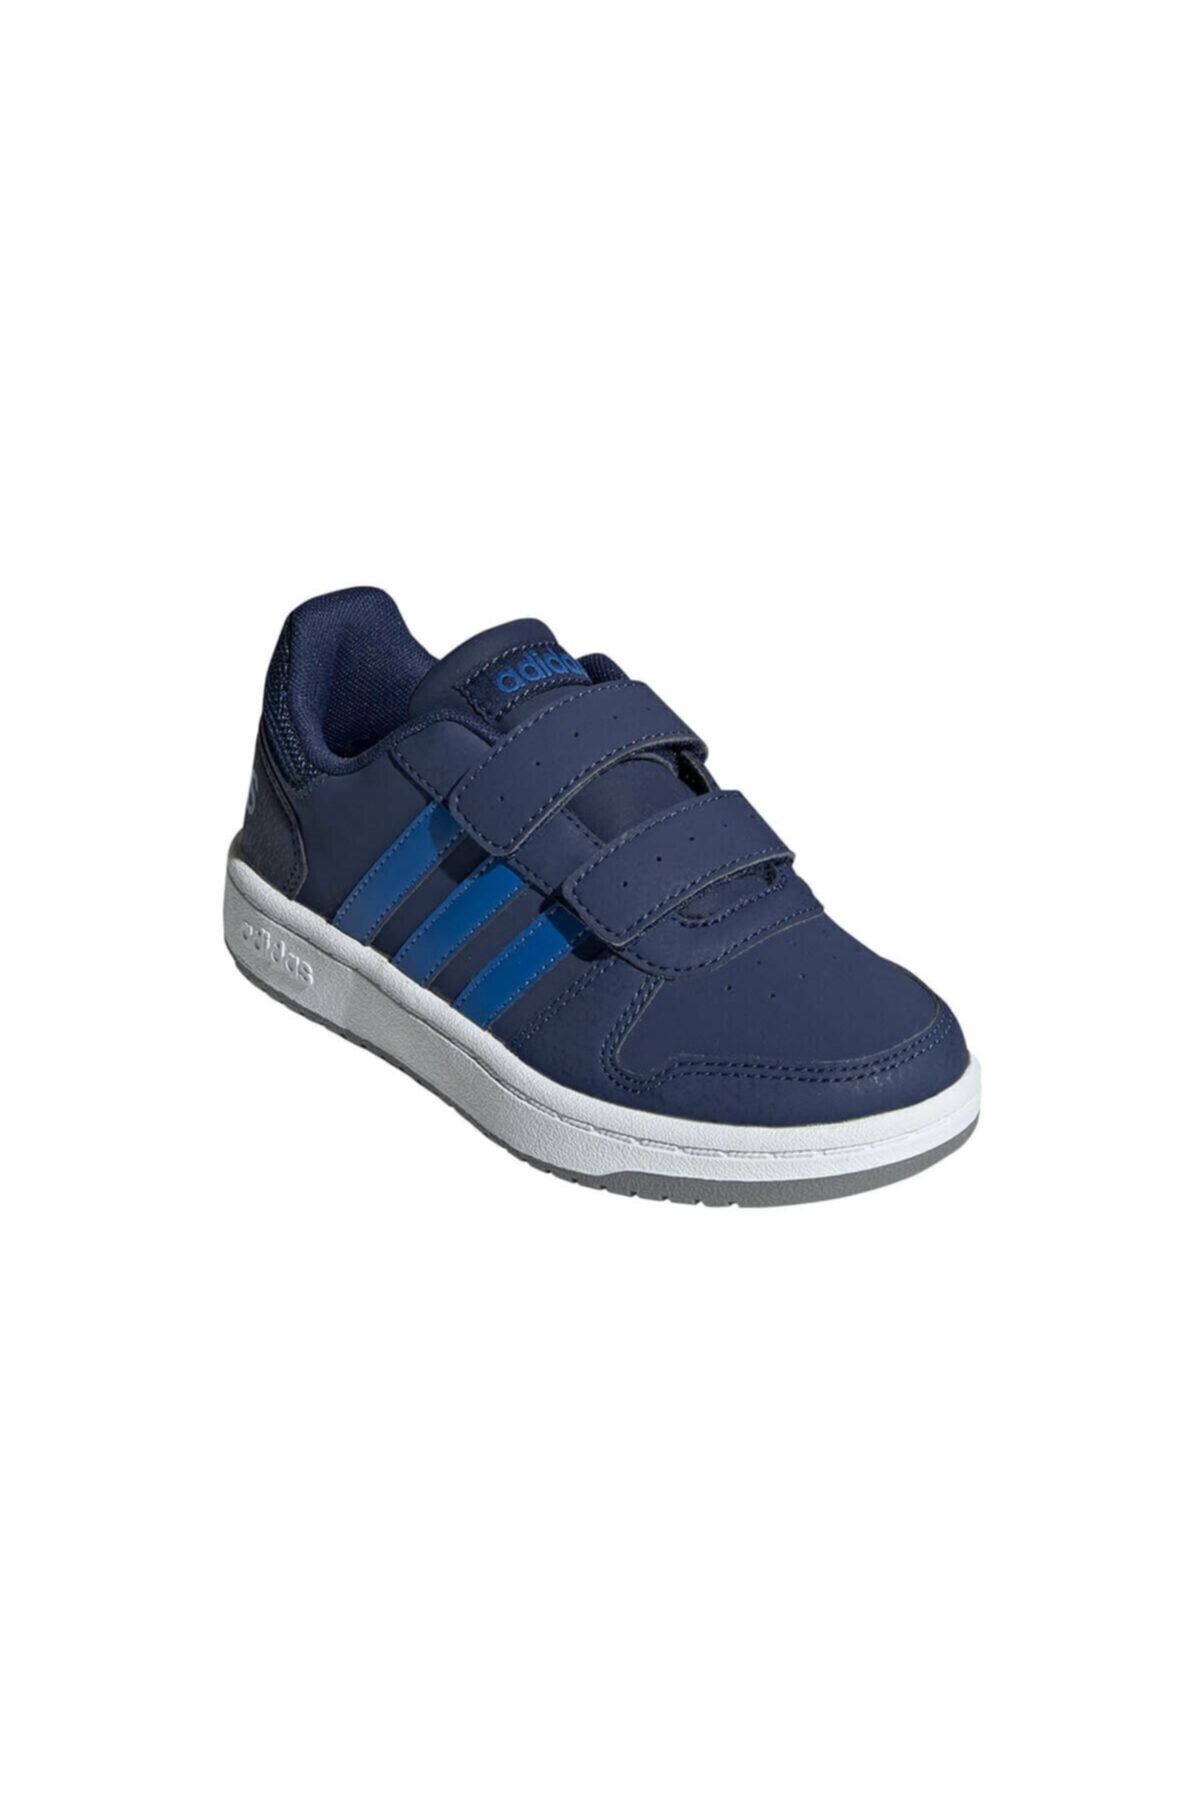 adidas Hoops 2.0 Cmf Lacivert Erkek Çocuk Sneaker Ayakkabı